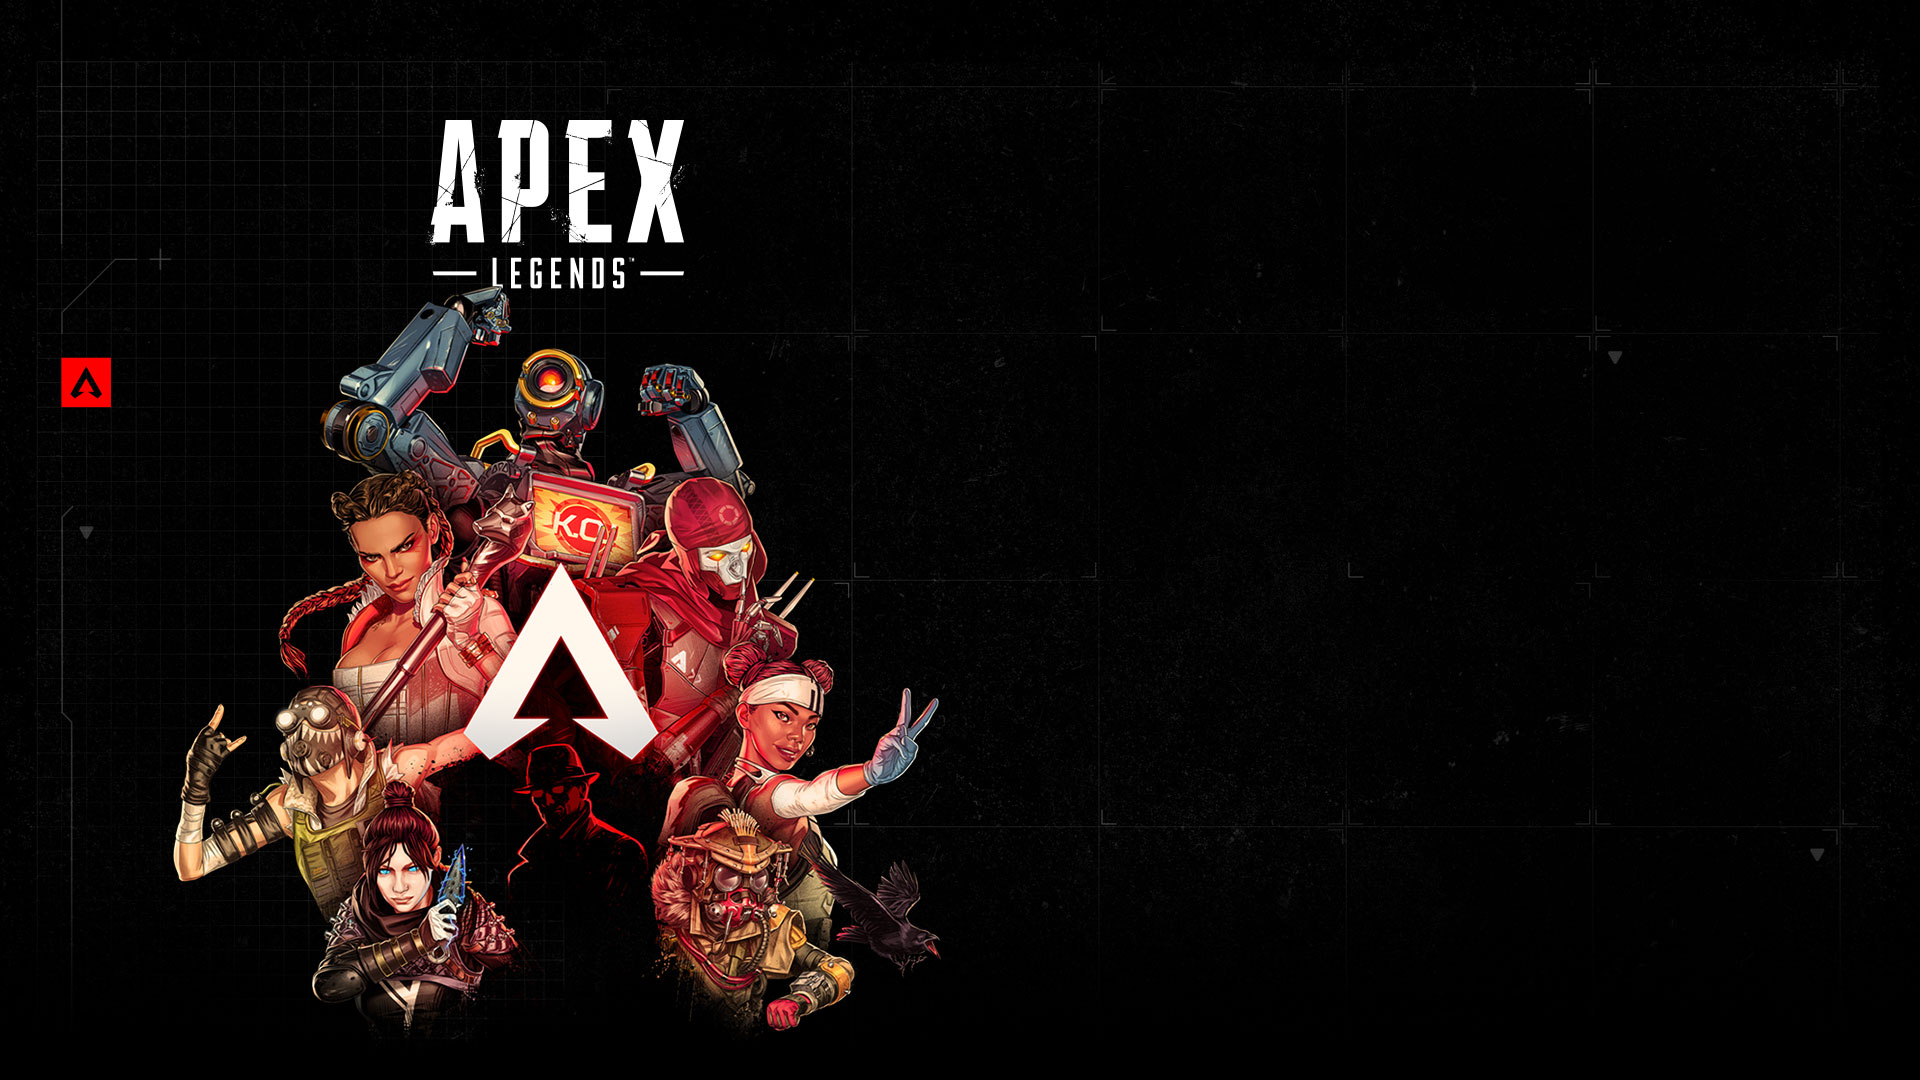 Apex Legends, Seven legends strike poses around the Apex Legends Logo.